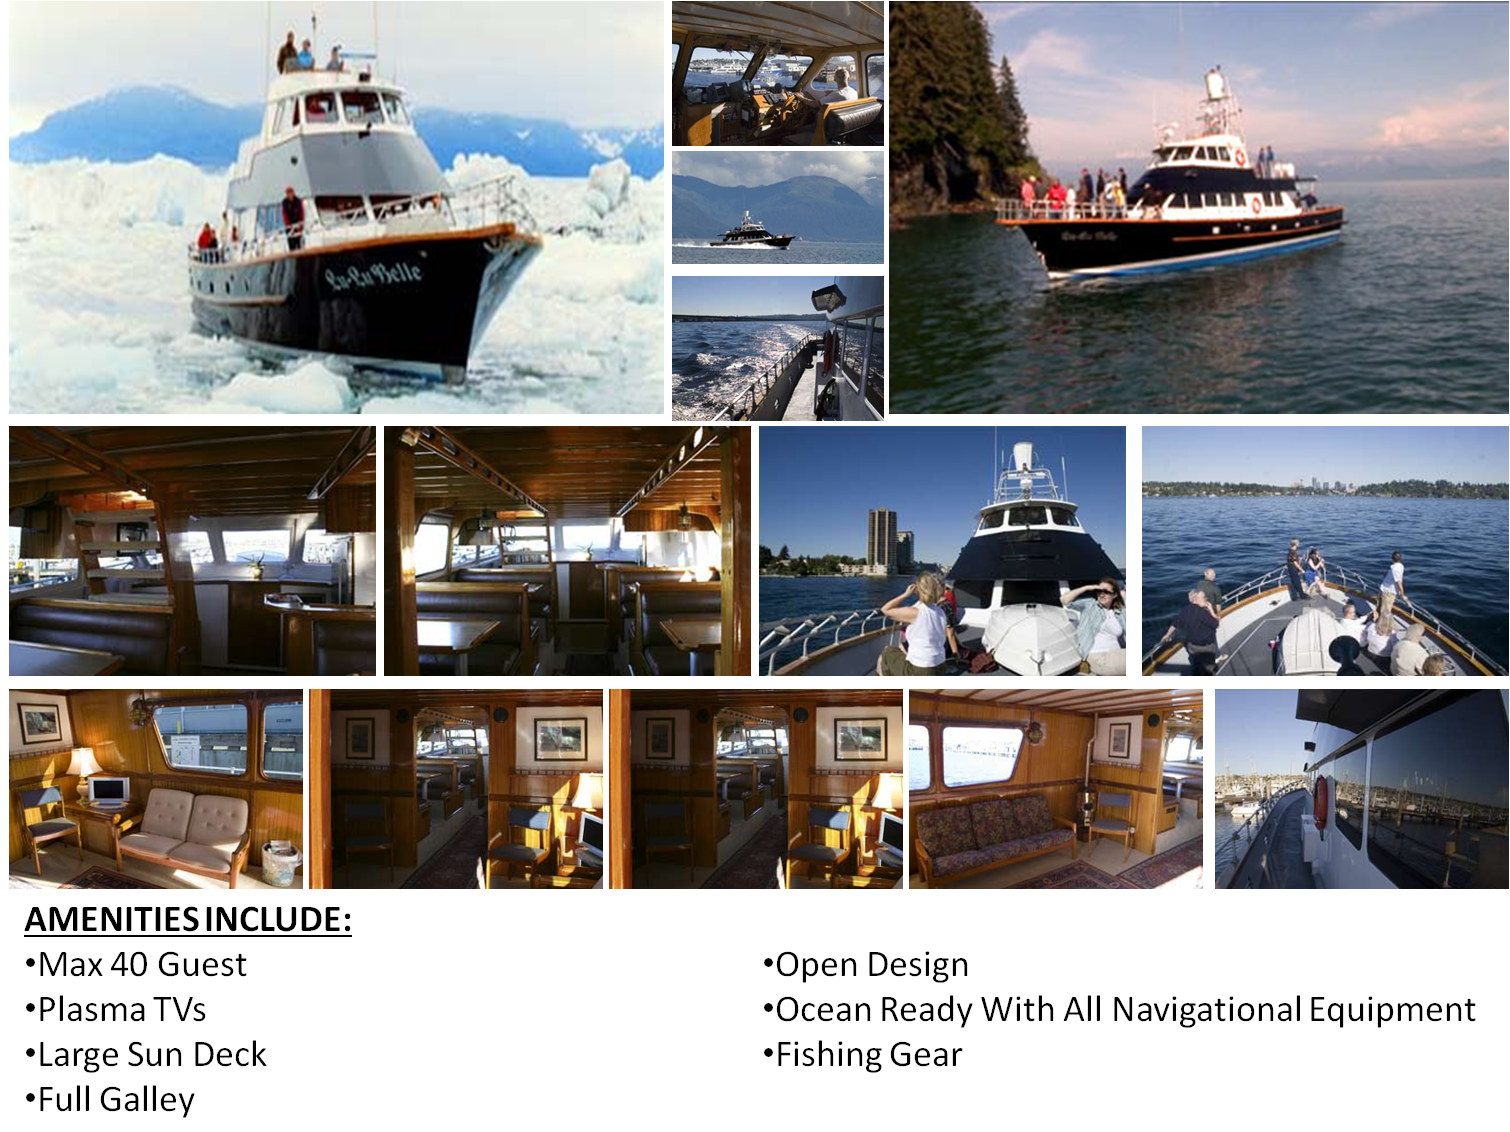 luxury yacht rental seattle